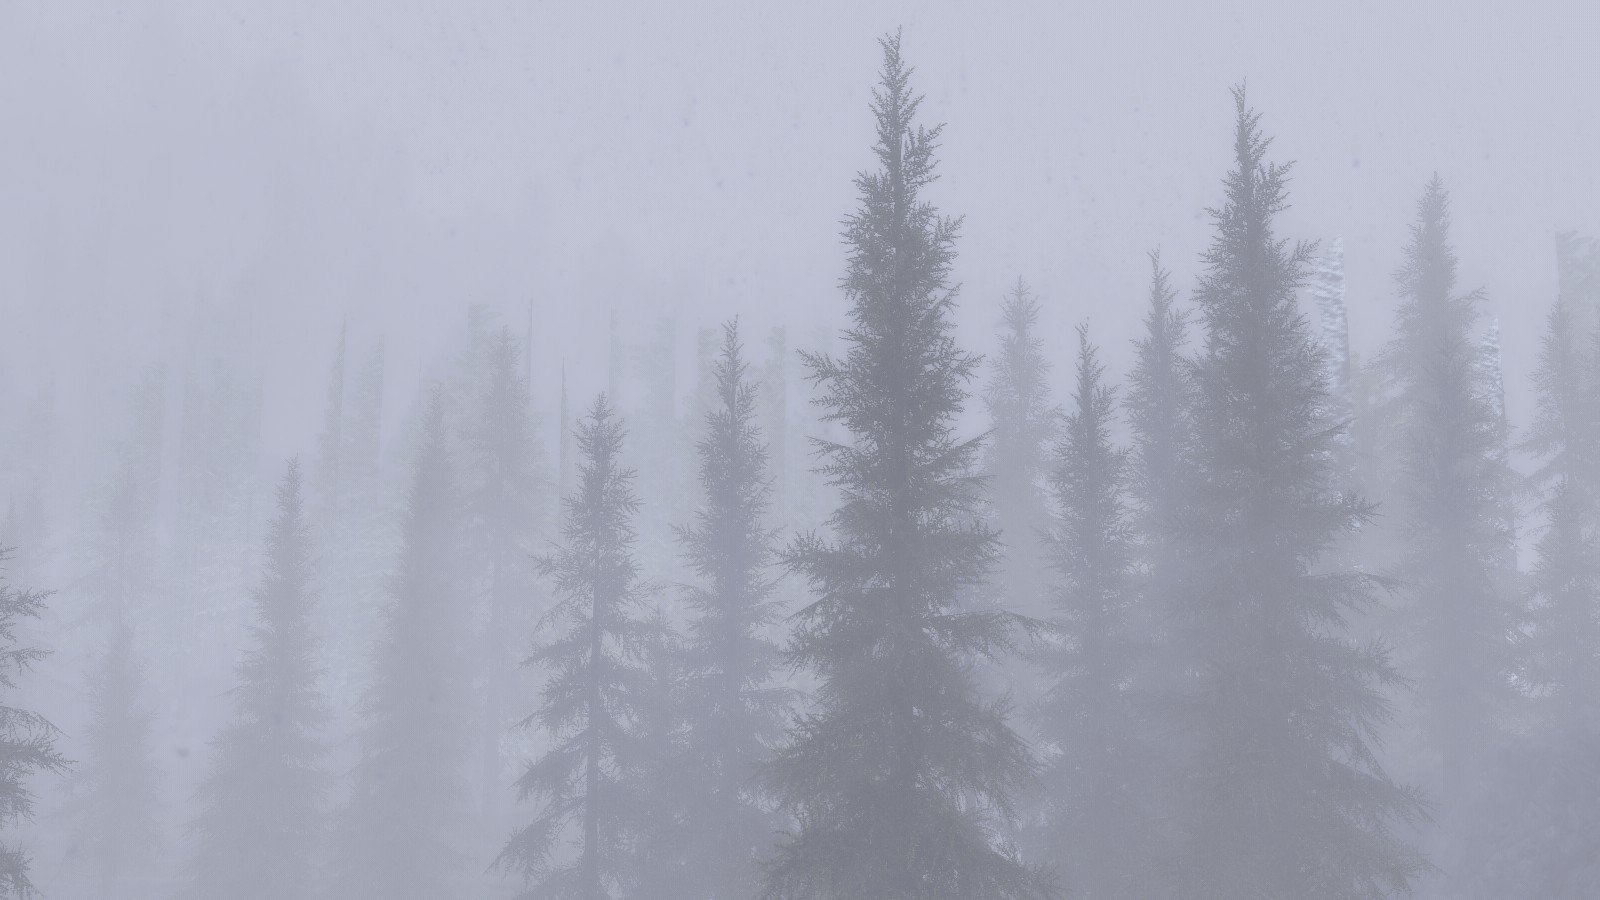 The Elder Scrolls V: Skyrim, Environment, Mist, Forest Wallpaper